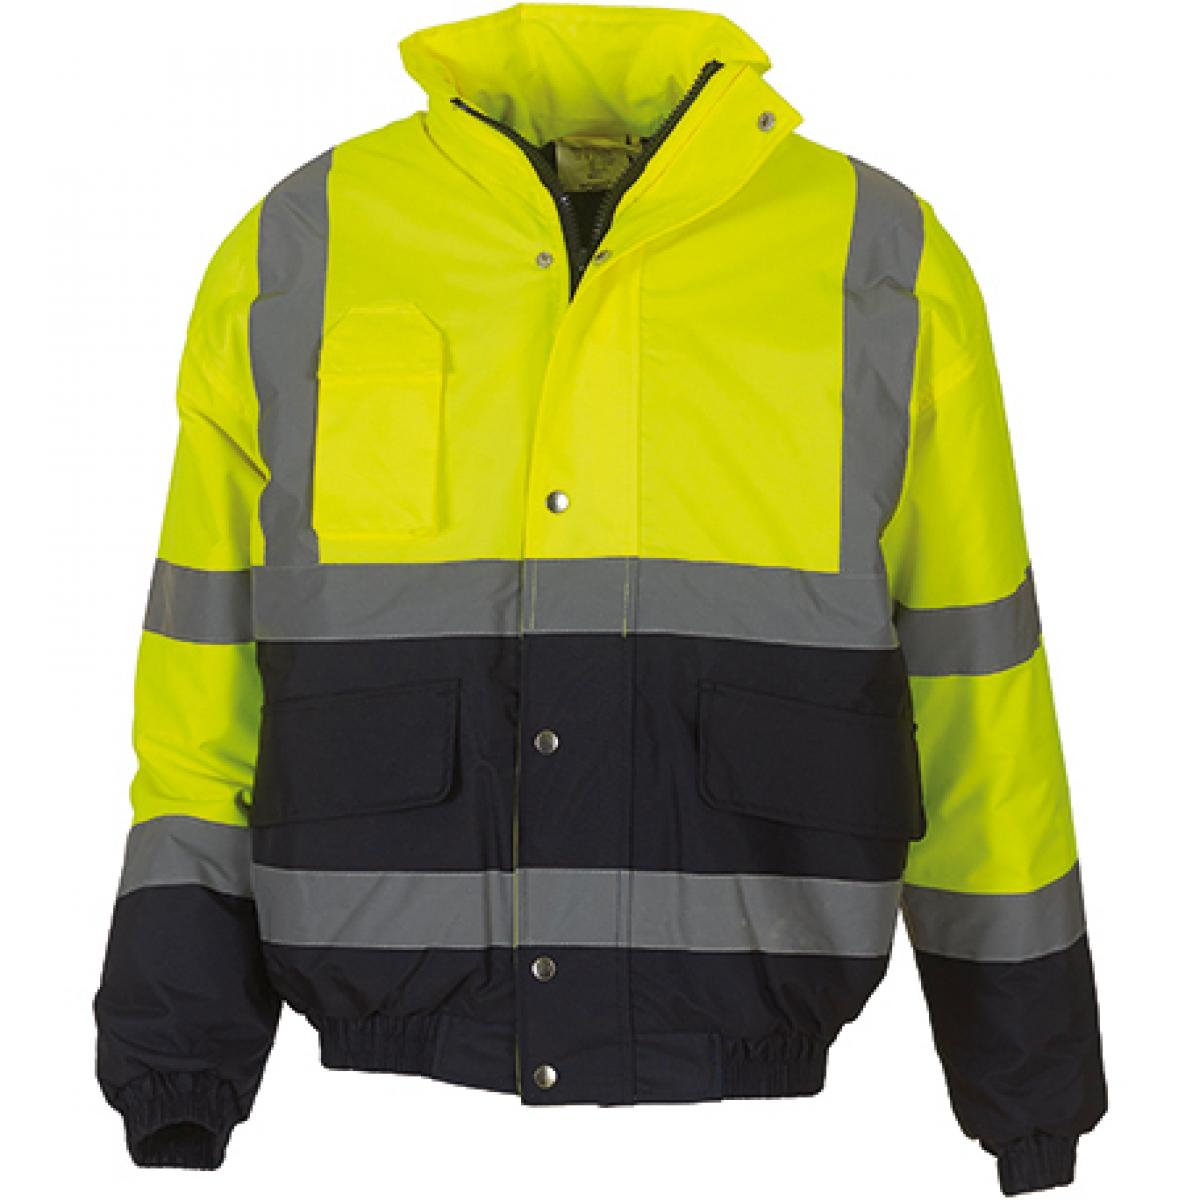 Hersteller: YOKO Herstellernummer: HVP218 Artikelbezeichnung: High Visibility Two-Tone Jacke | EN ISO 471:2013 Klasse 3 Farbe: Hi-Vis Yellow/Navy